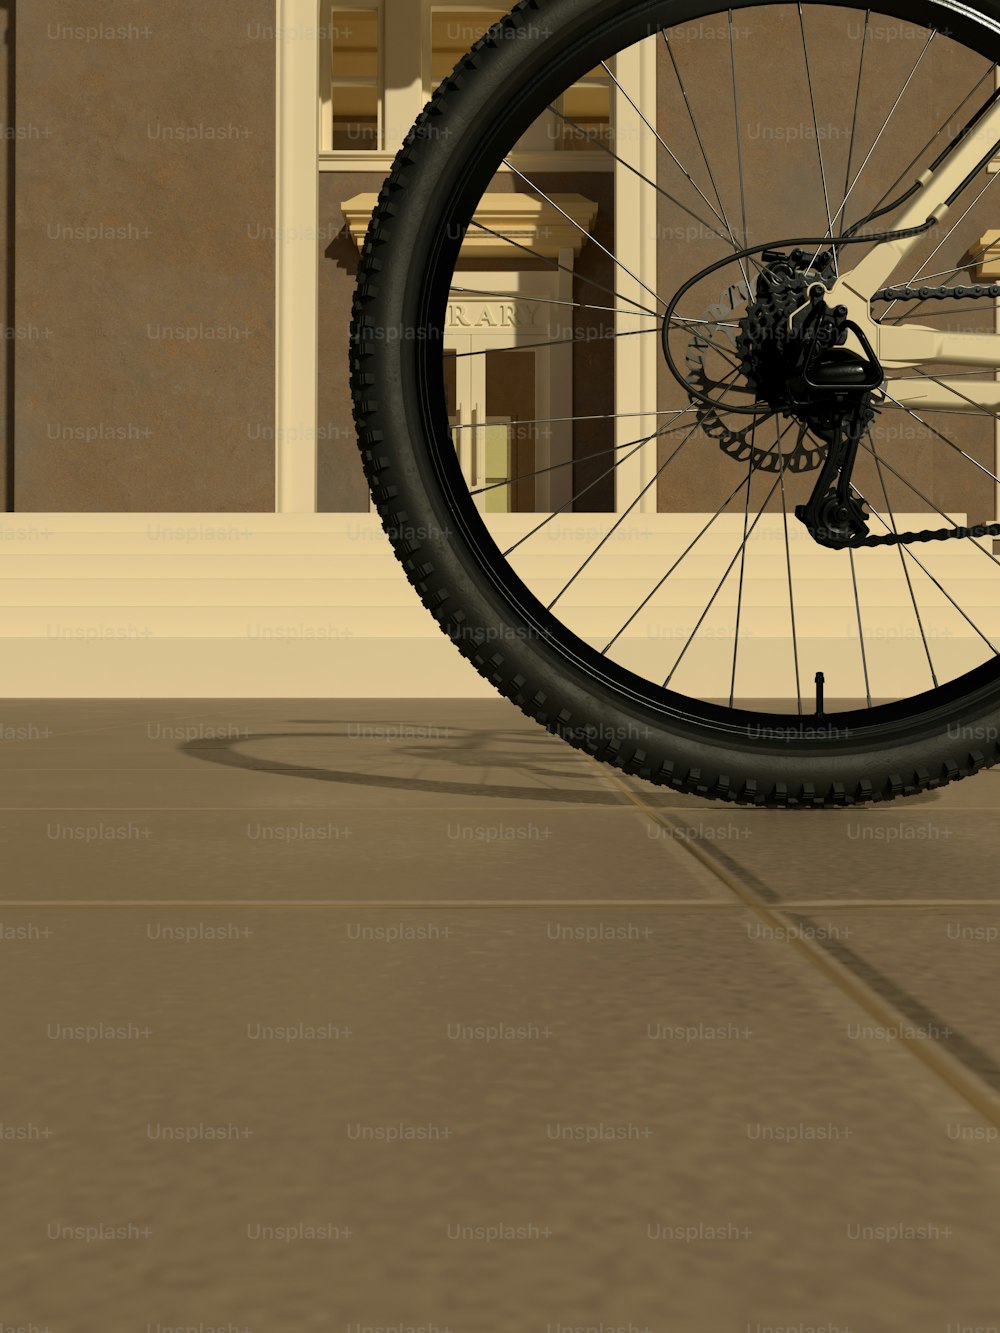 Un primo piano di uno pneumatico di una bicicletta su una strada